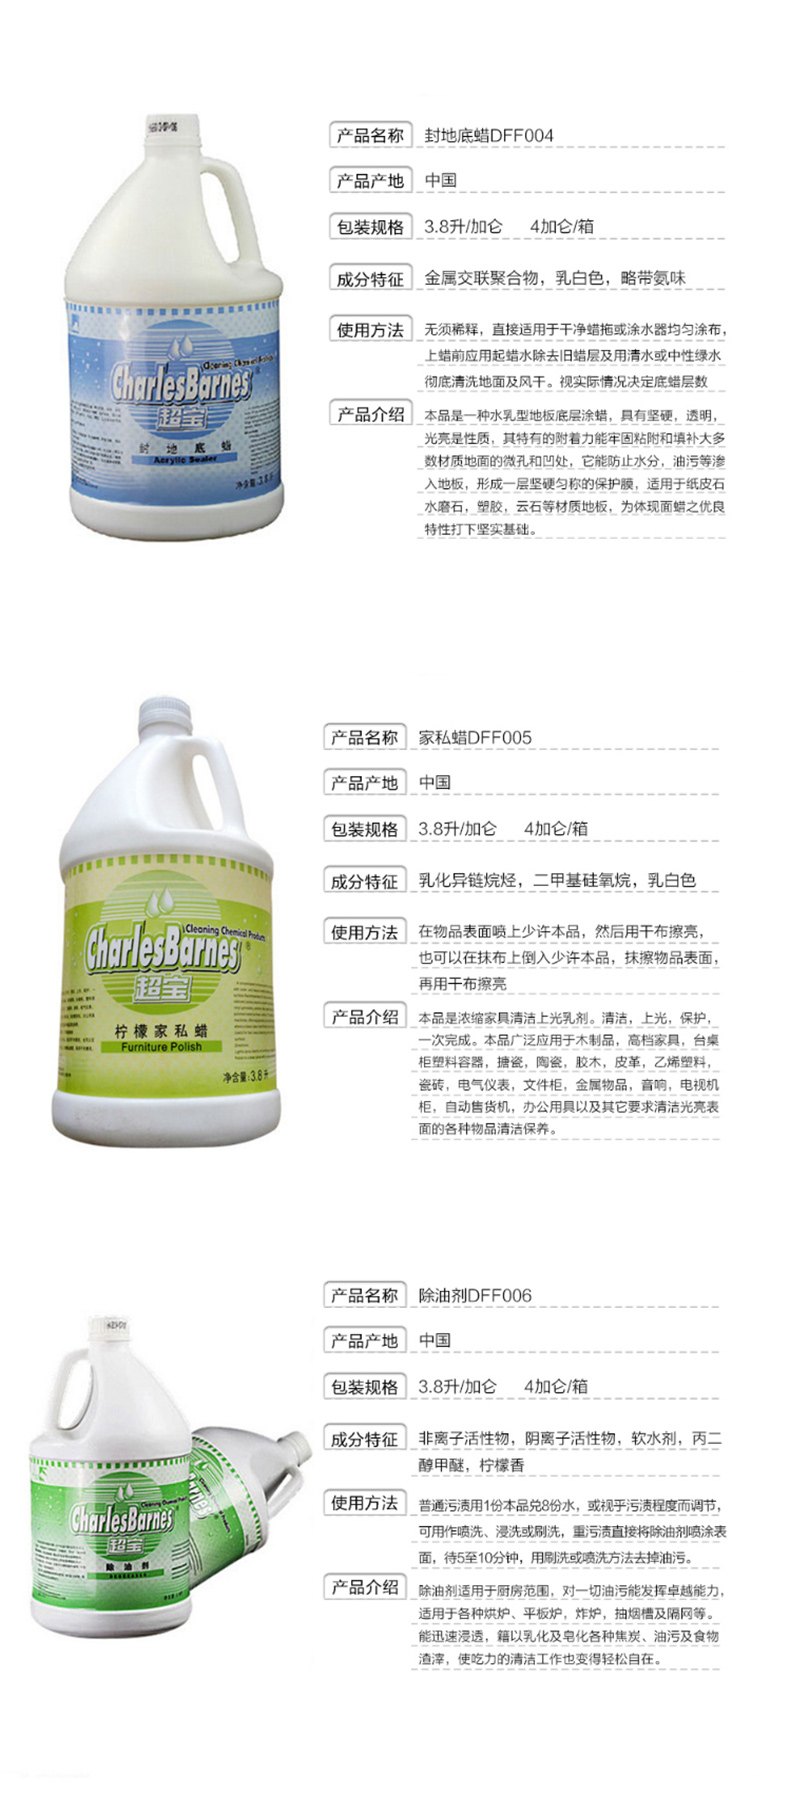 超宝 chaobao 地毯除胶剂 DFF026 净含量：3.8L 成分特征：石油衍生物，卤代烃 使用方法：除胶剂喷于污斑处，反复揉刷，抹去胶渣，污垢严重处，重复使用。 